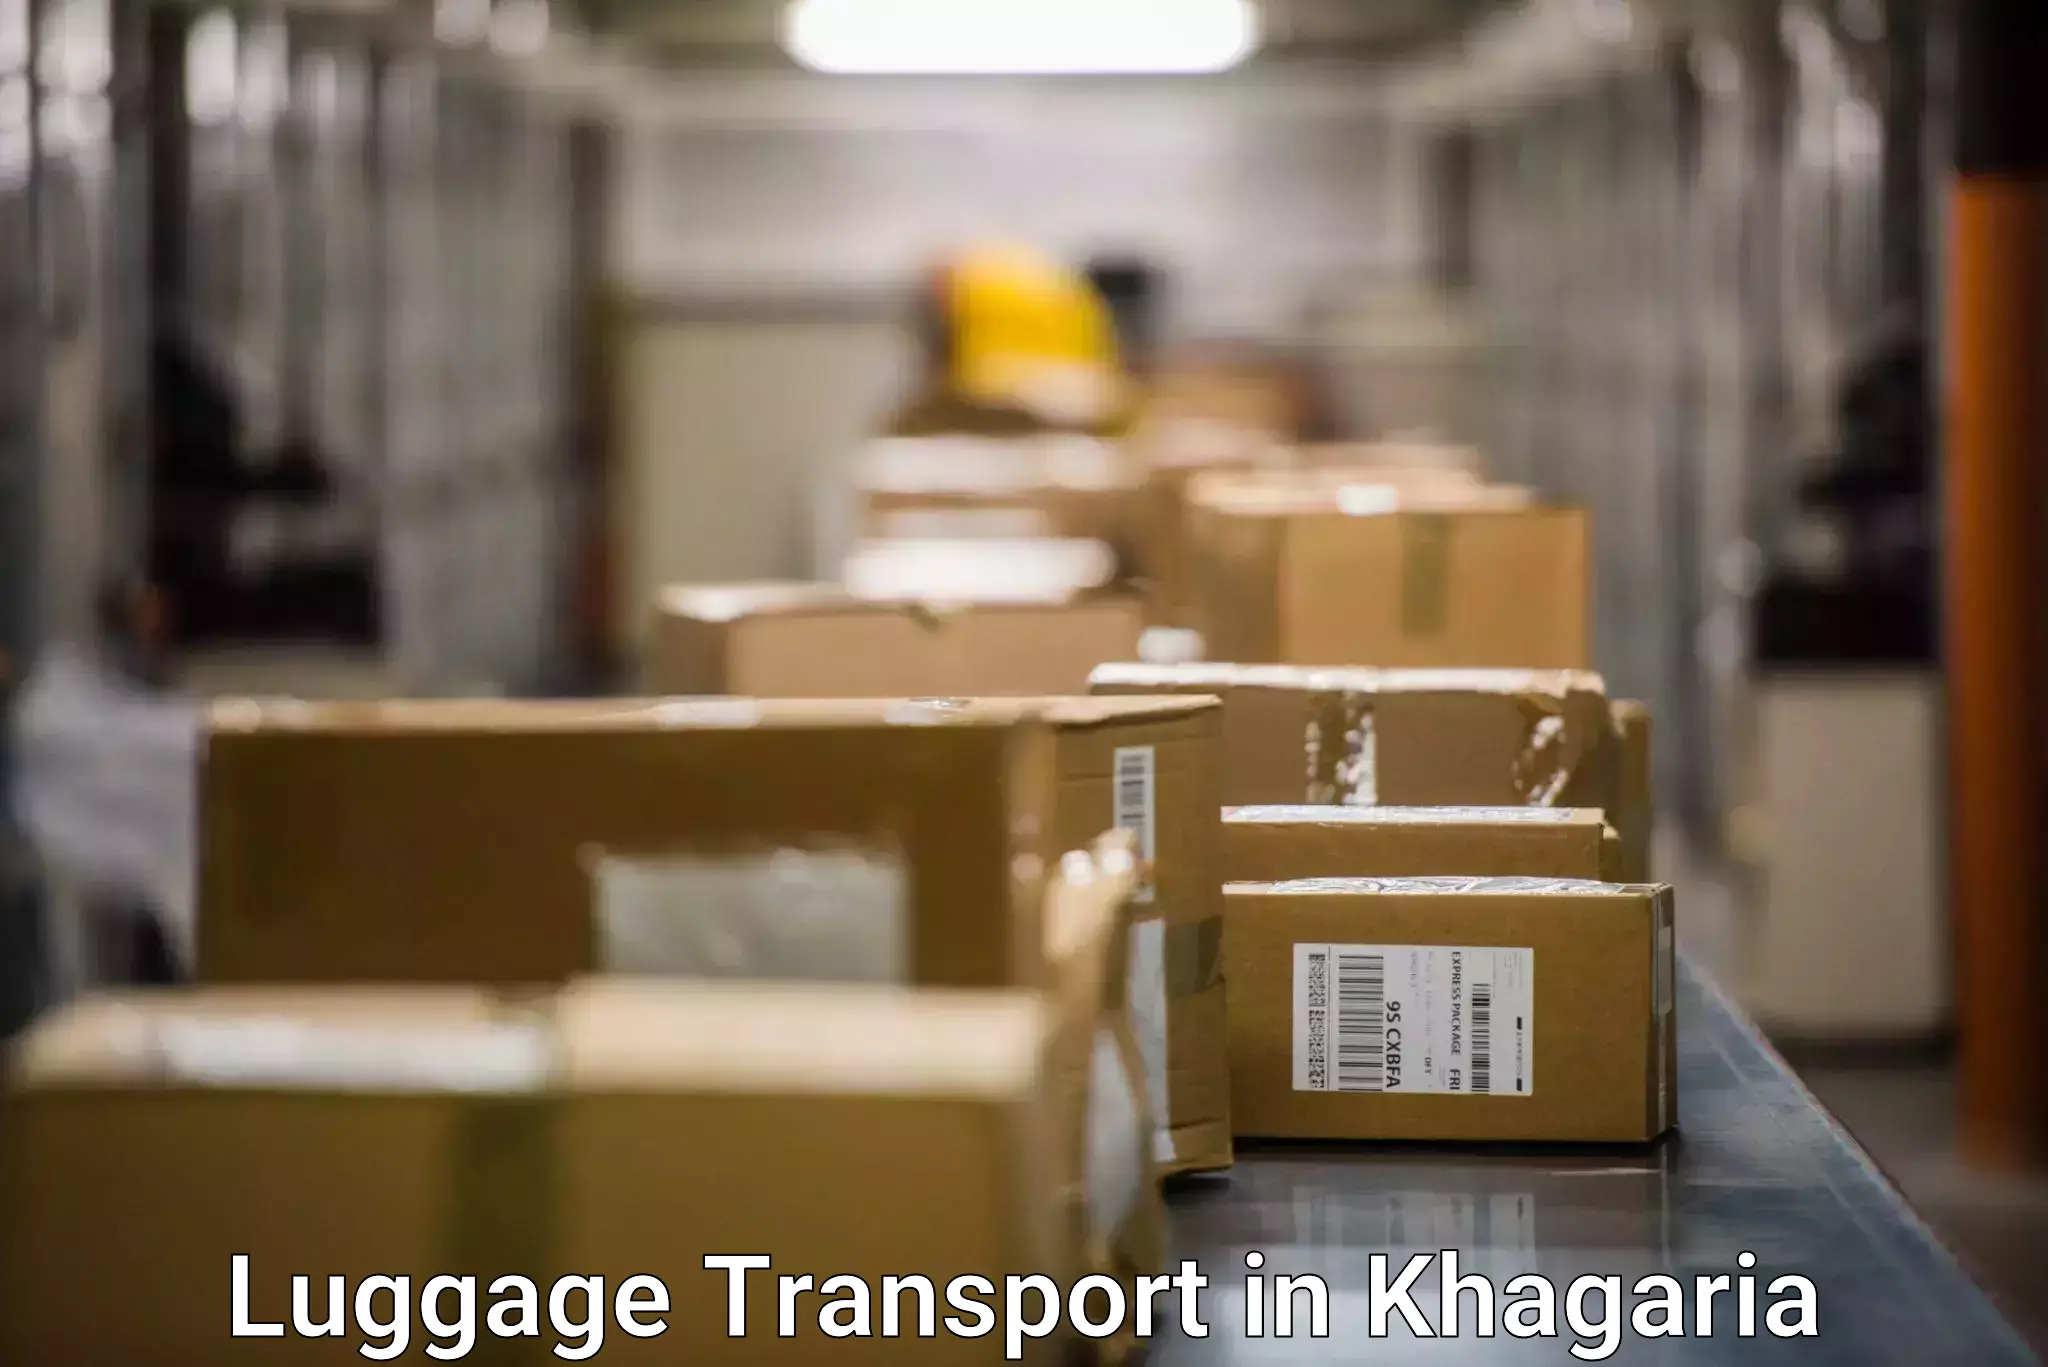 Holiday baggage shipping in Khagaria